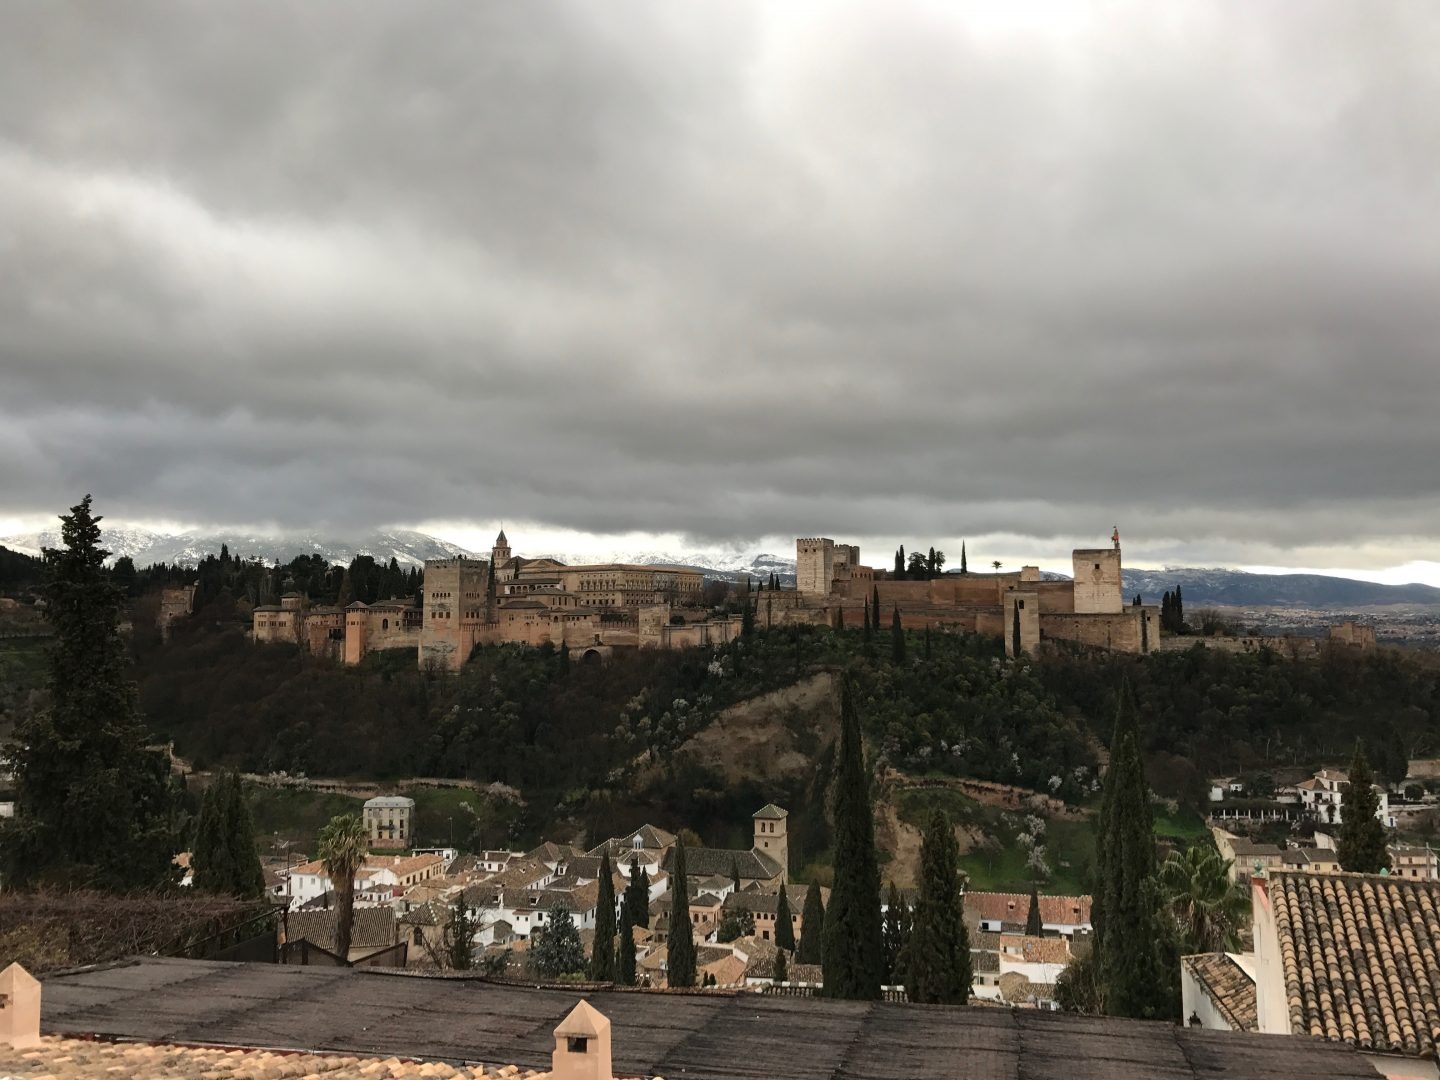 Vista de la Alhambra de Granada. Fotografía del pasado mes de marzo.